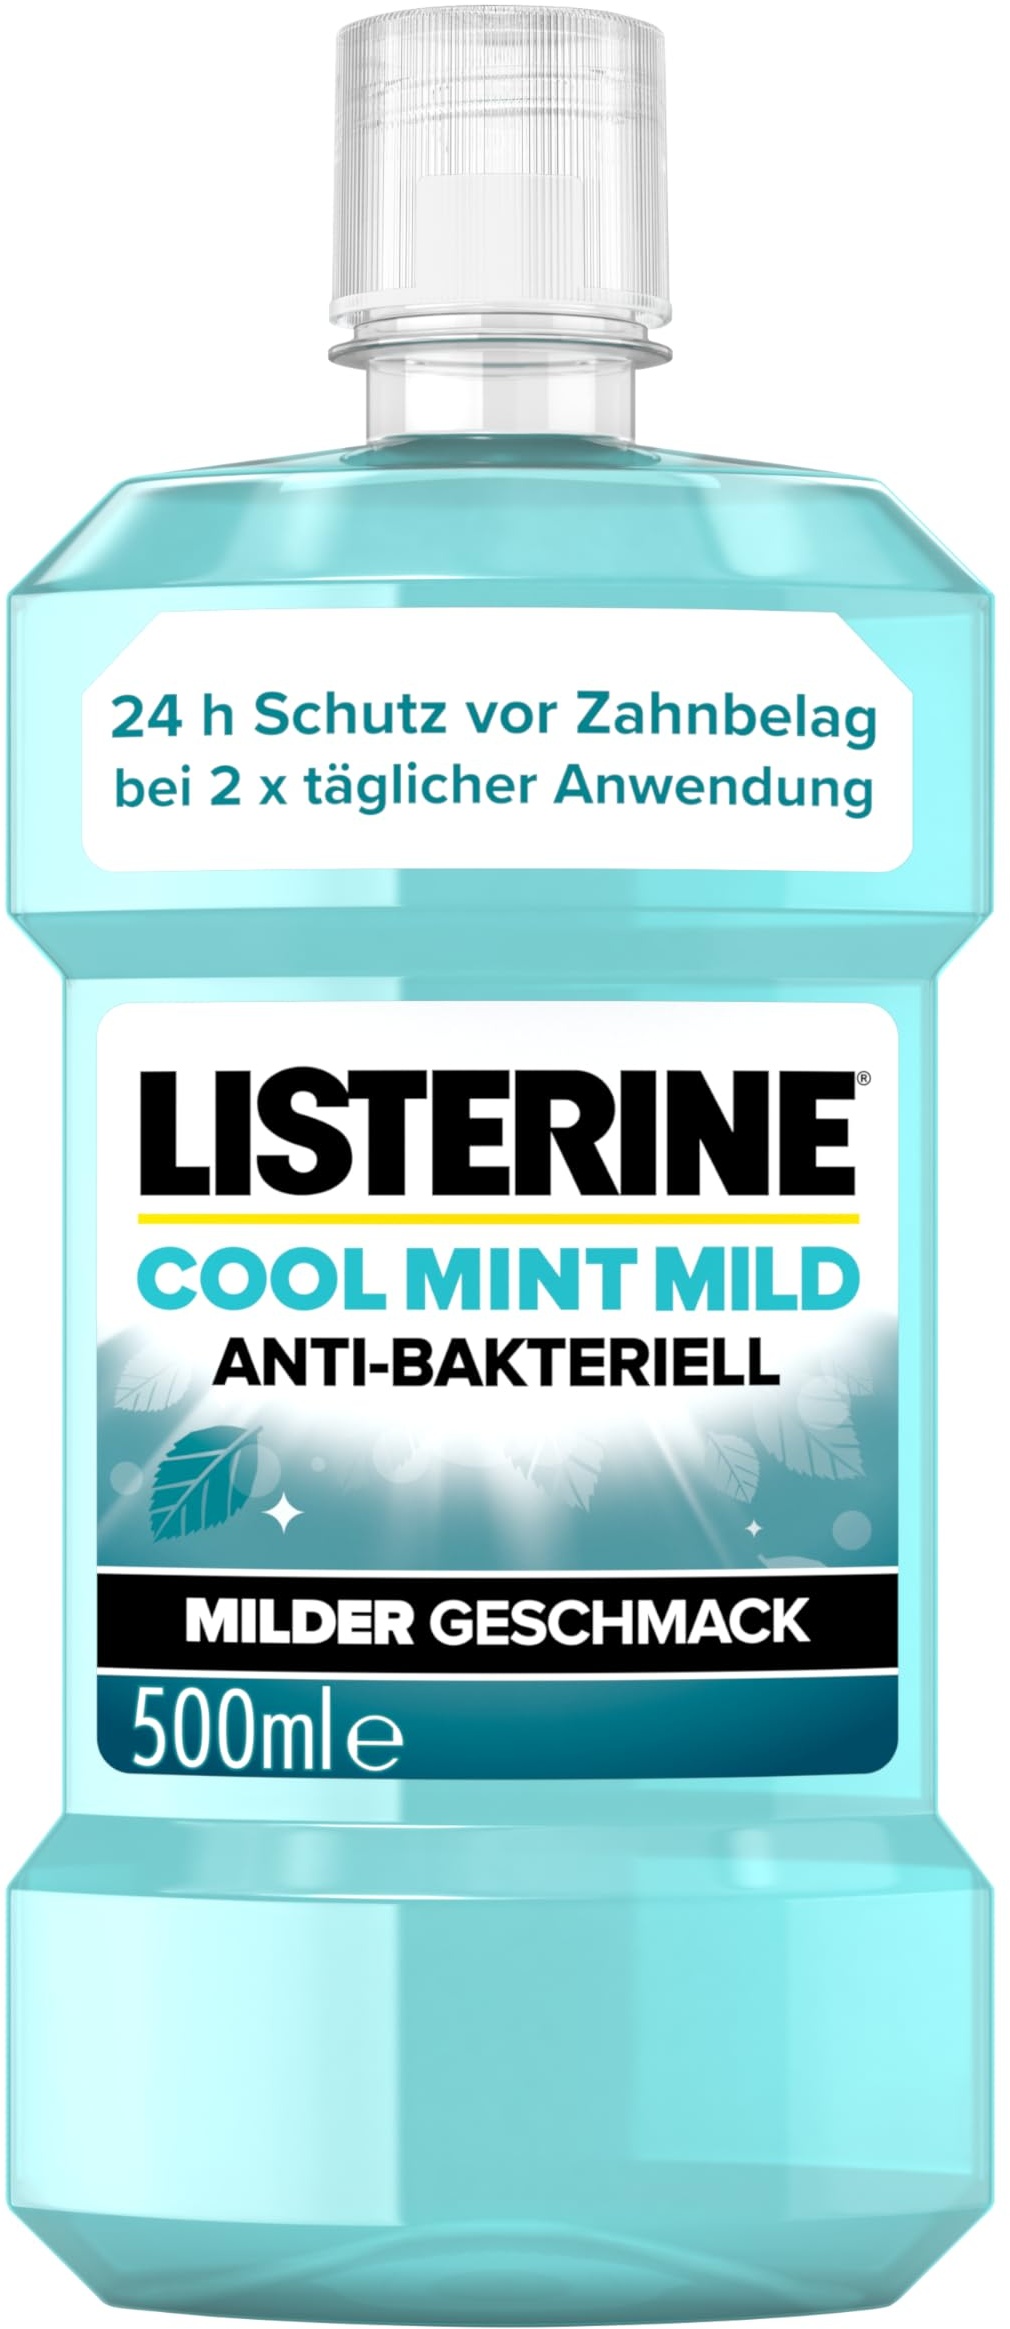 LISTERINE Cool Mint Mild (500 ml), antibakterielle Mundspülung mit ätherischen Ölen & ohne Alkohol, mildes Mundwasser bekämpft wirksam Bakterien, perfekte Ergänzung zur täglichen Zahnpflege